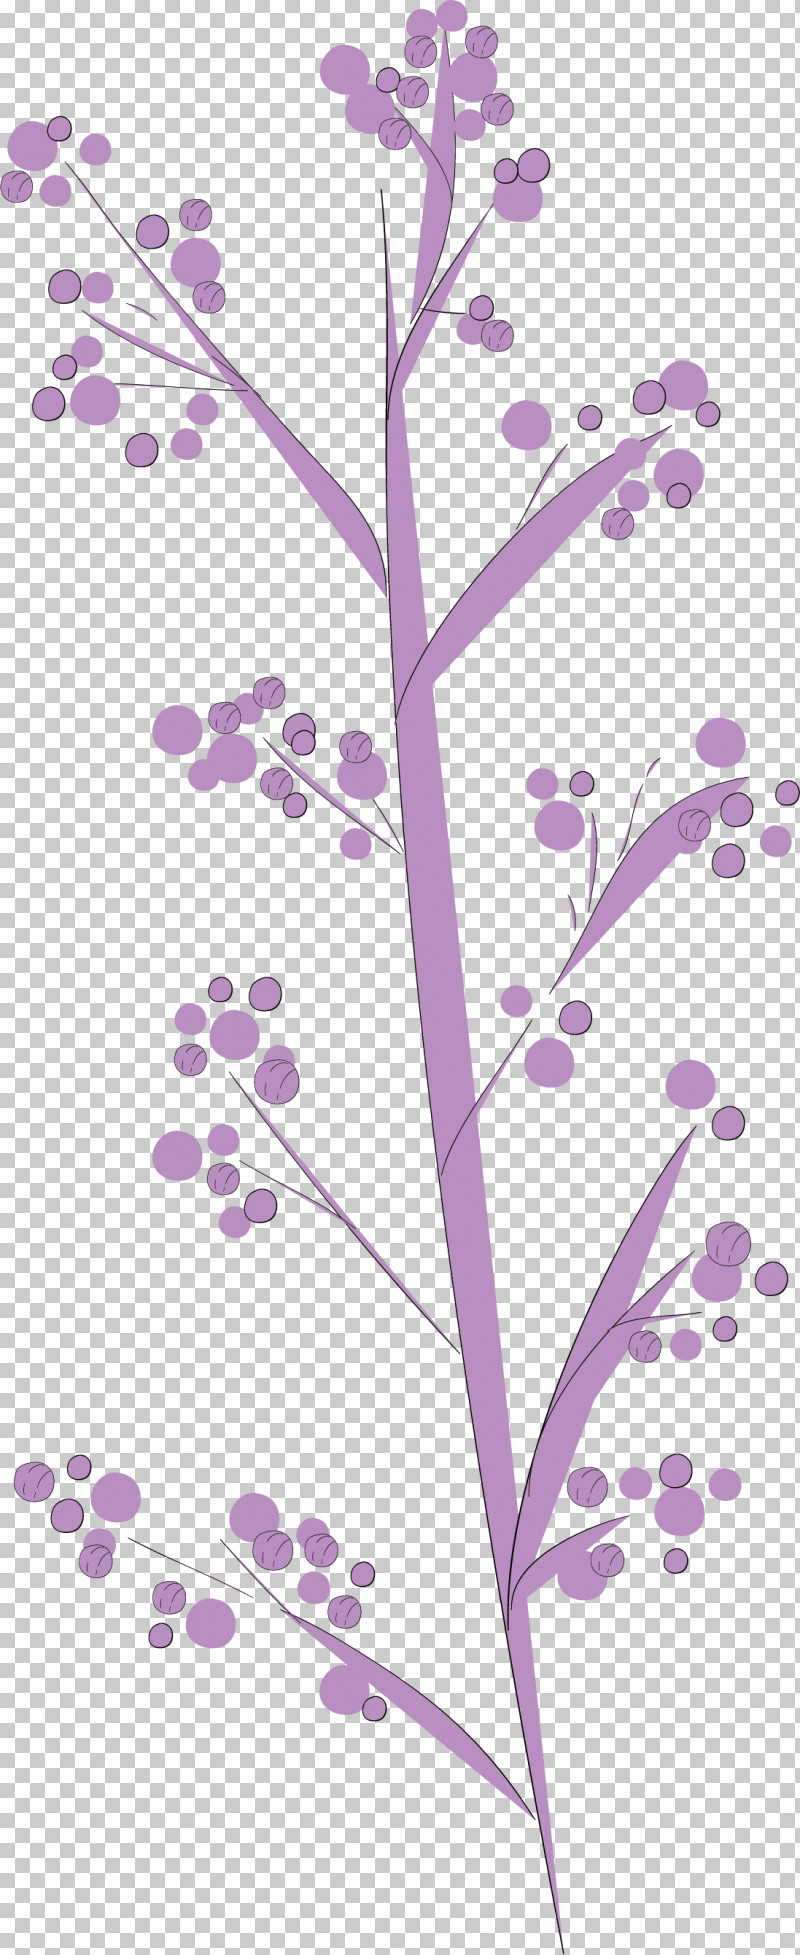 Simple Leaf Simple Leaf Drawing Simple Leaf Outline PNG, Clipart, Biology, Floral Design, Flower, Leaf, Line Free PNG Download